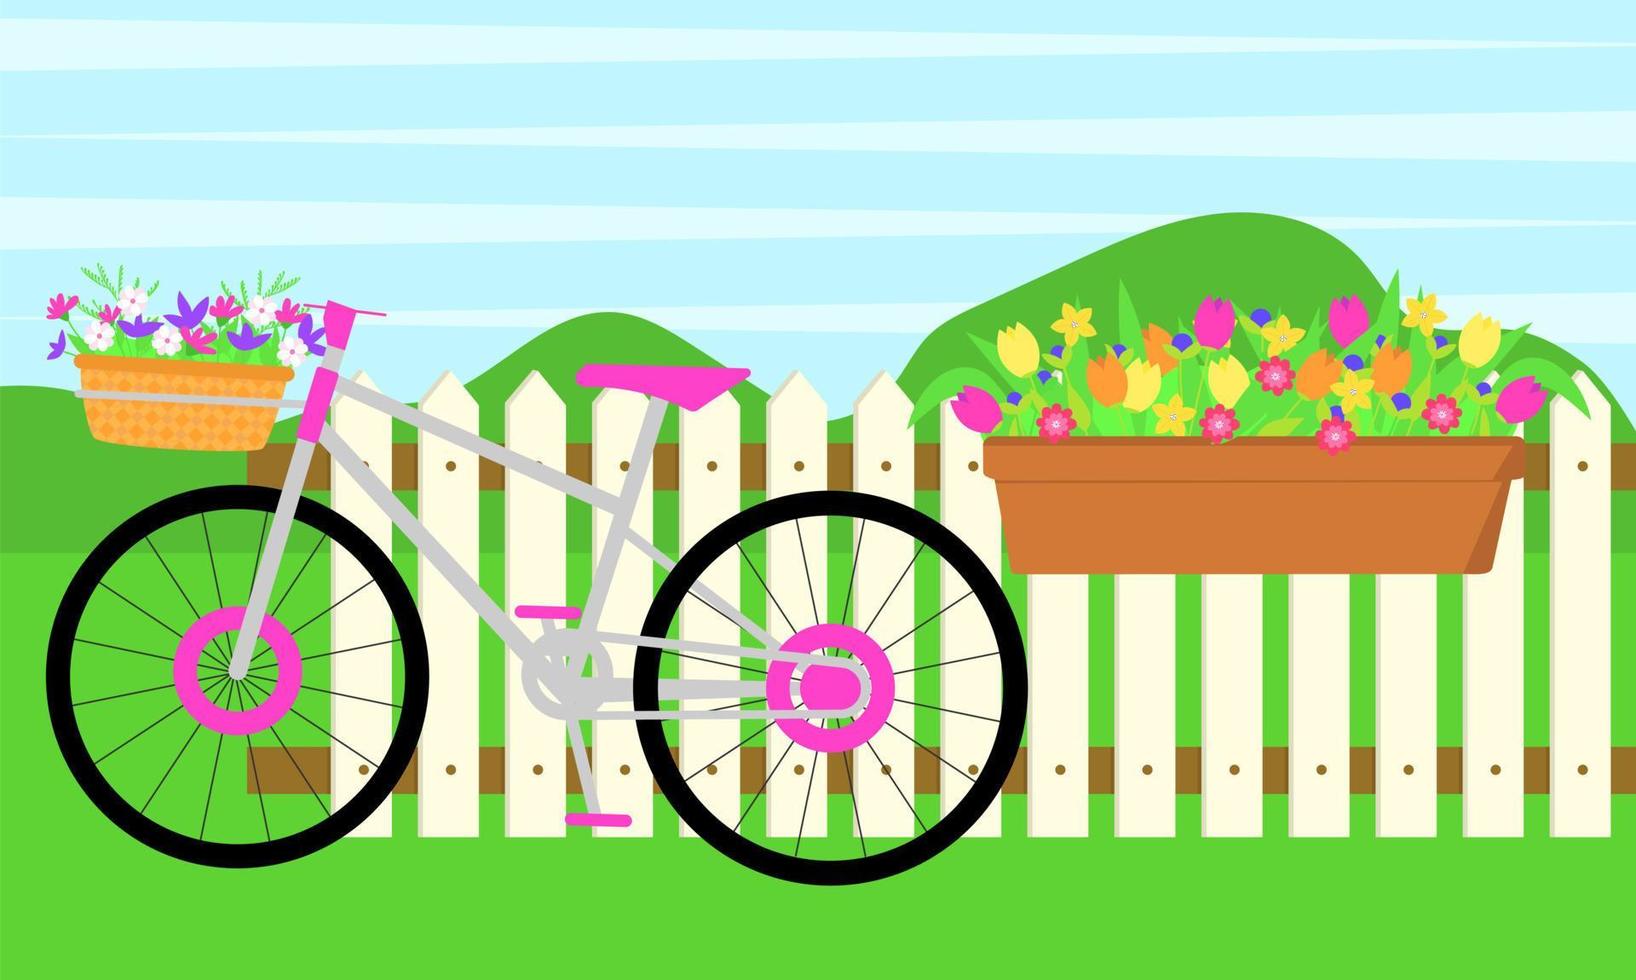 Frühlingslandschaft. Zaun, langer Topf mit Blumen, Fahrrad mit Blumenkorb. Vektor-Illustration. vektor